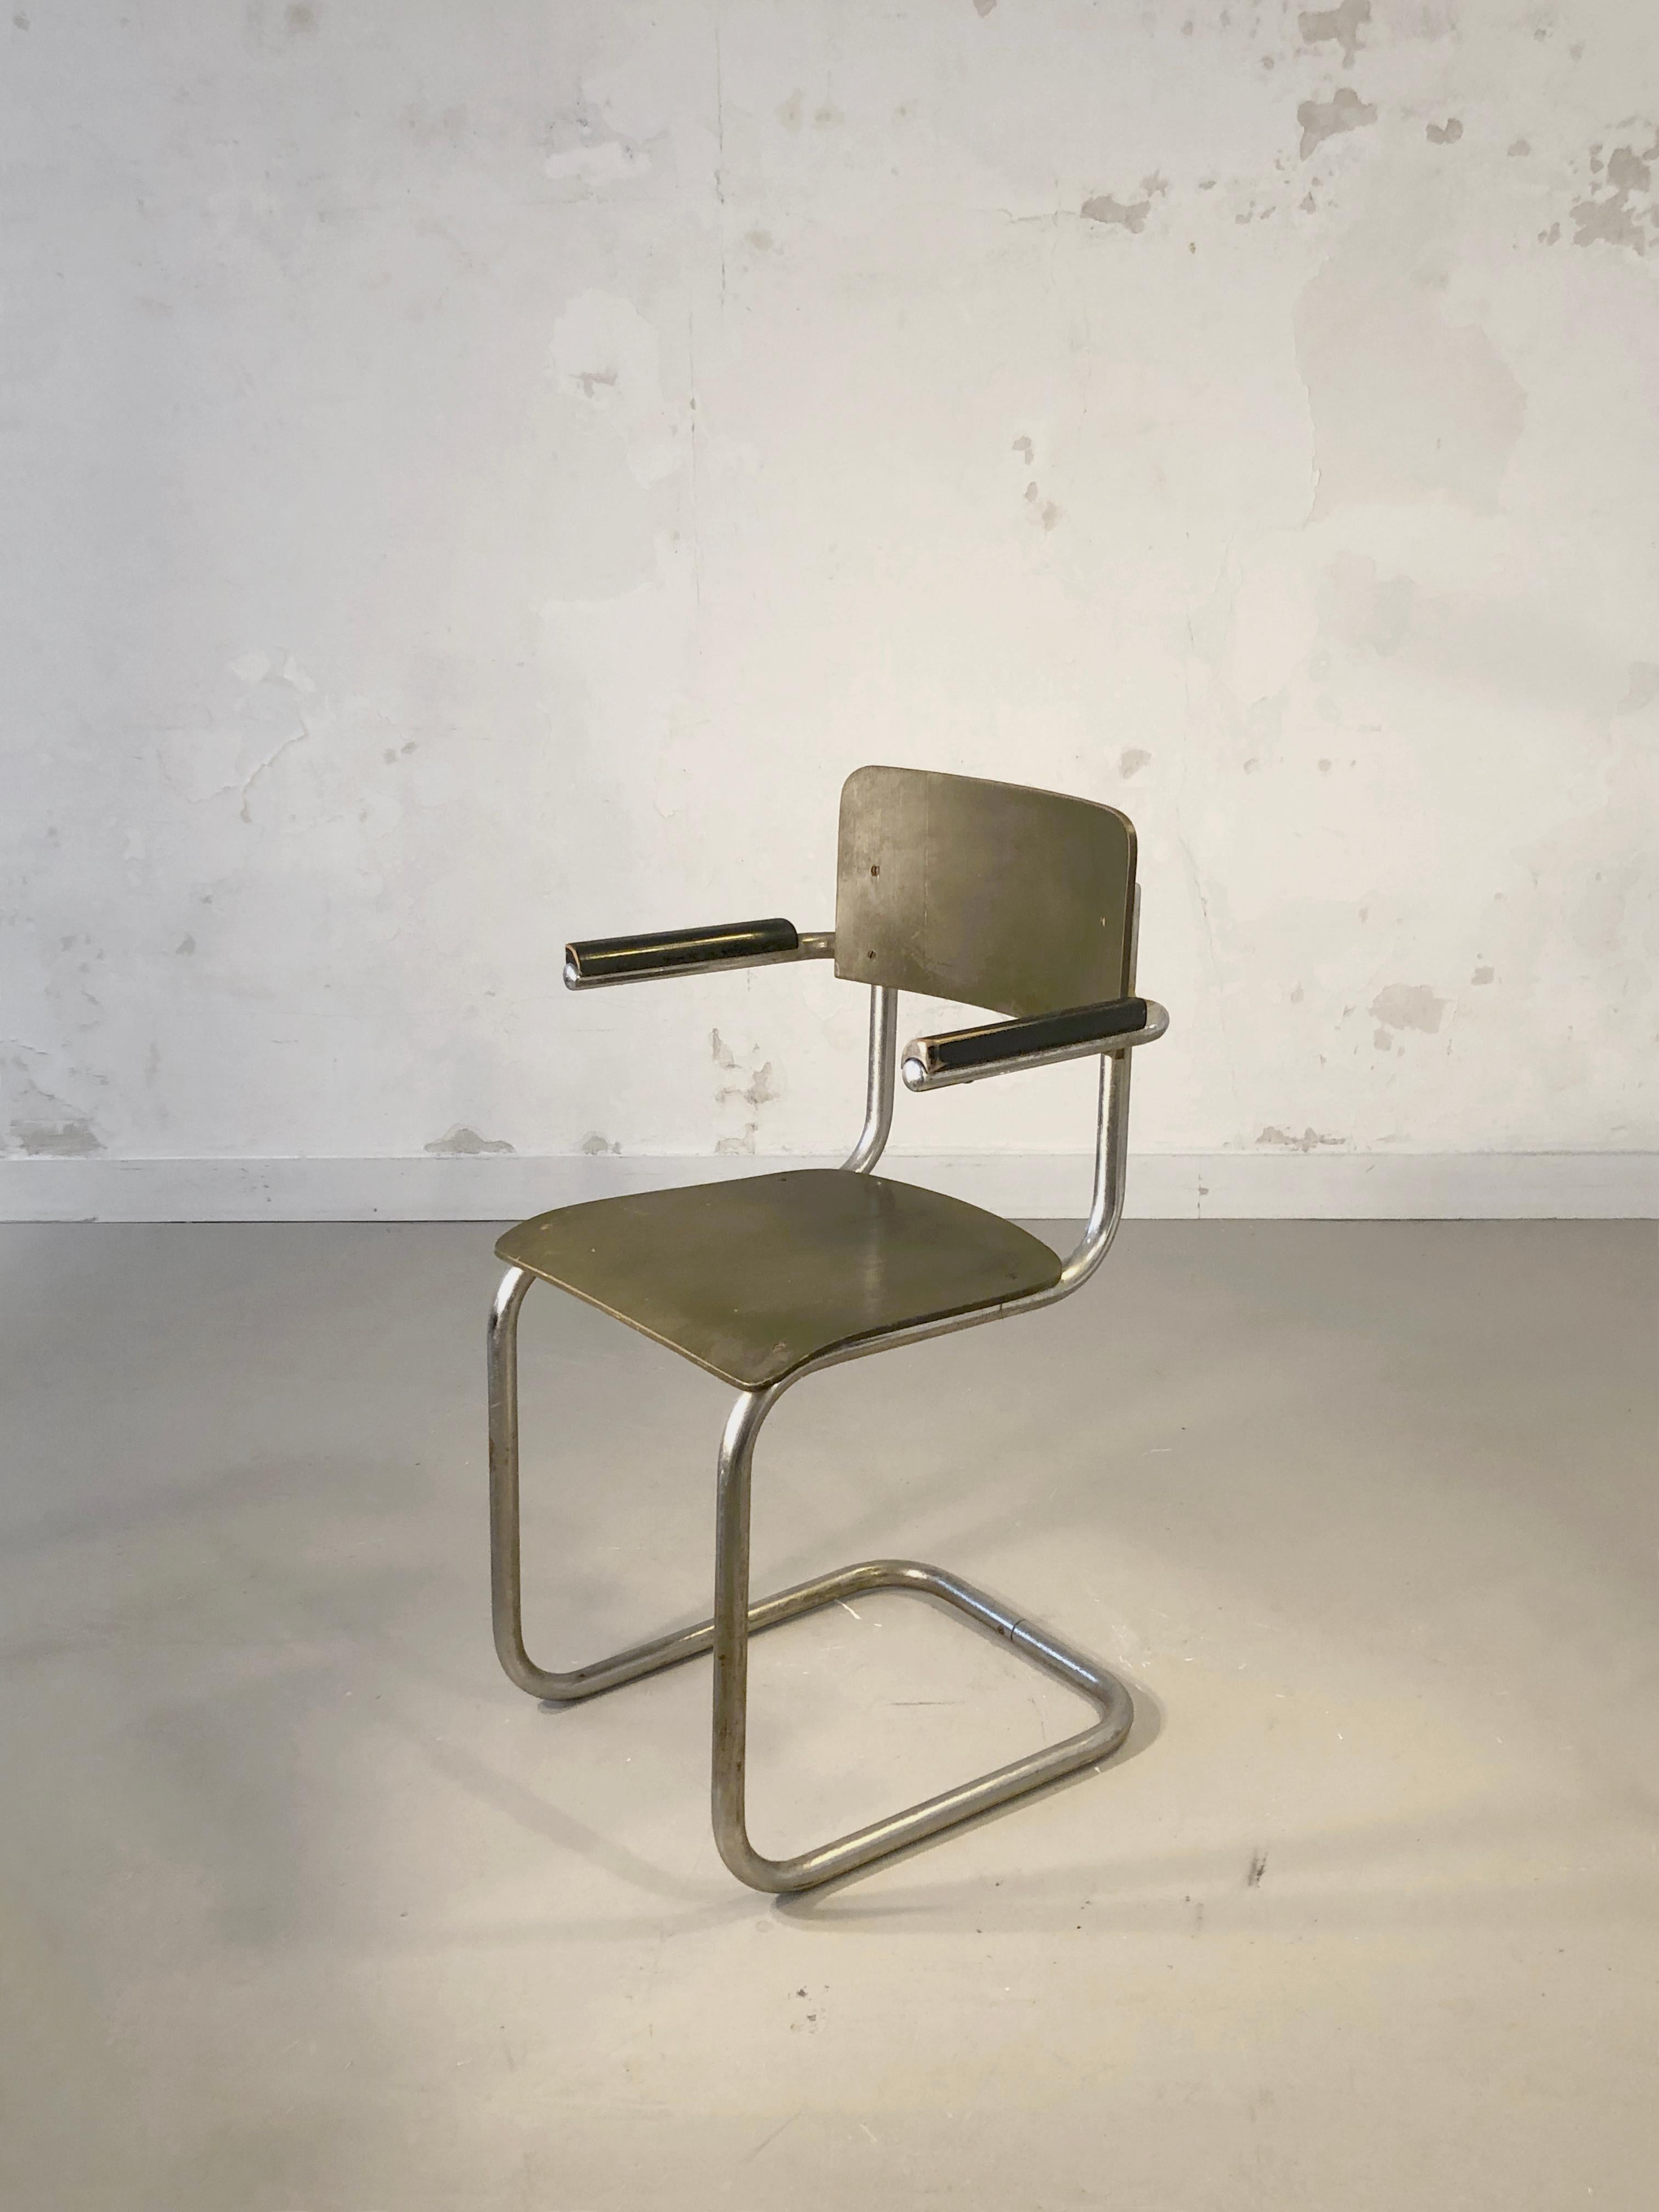 Ein ikonischer minimalistischer Stuhl der frühen Moderne aus dem Bauhaus: Metallrohrgestell, Sitz und Rückenlehne aus schwarz und kakifarben lackiertem Sperrholz, Modell 